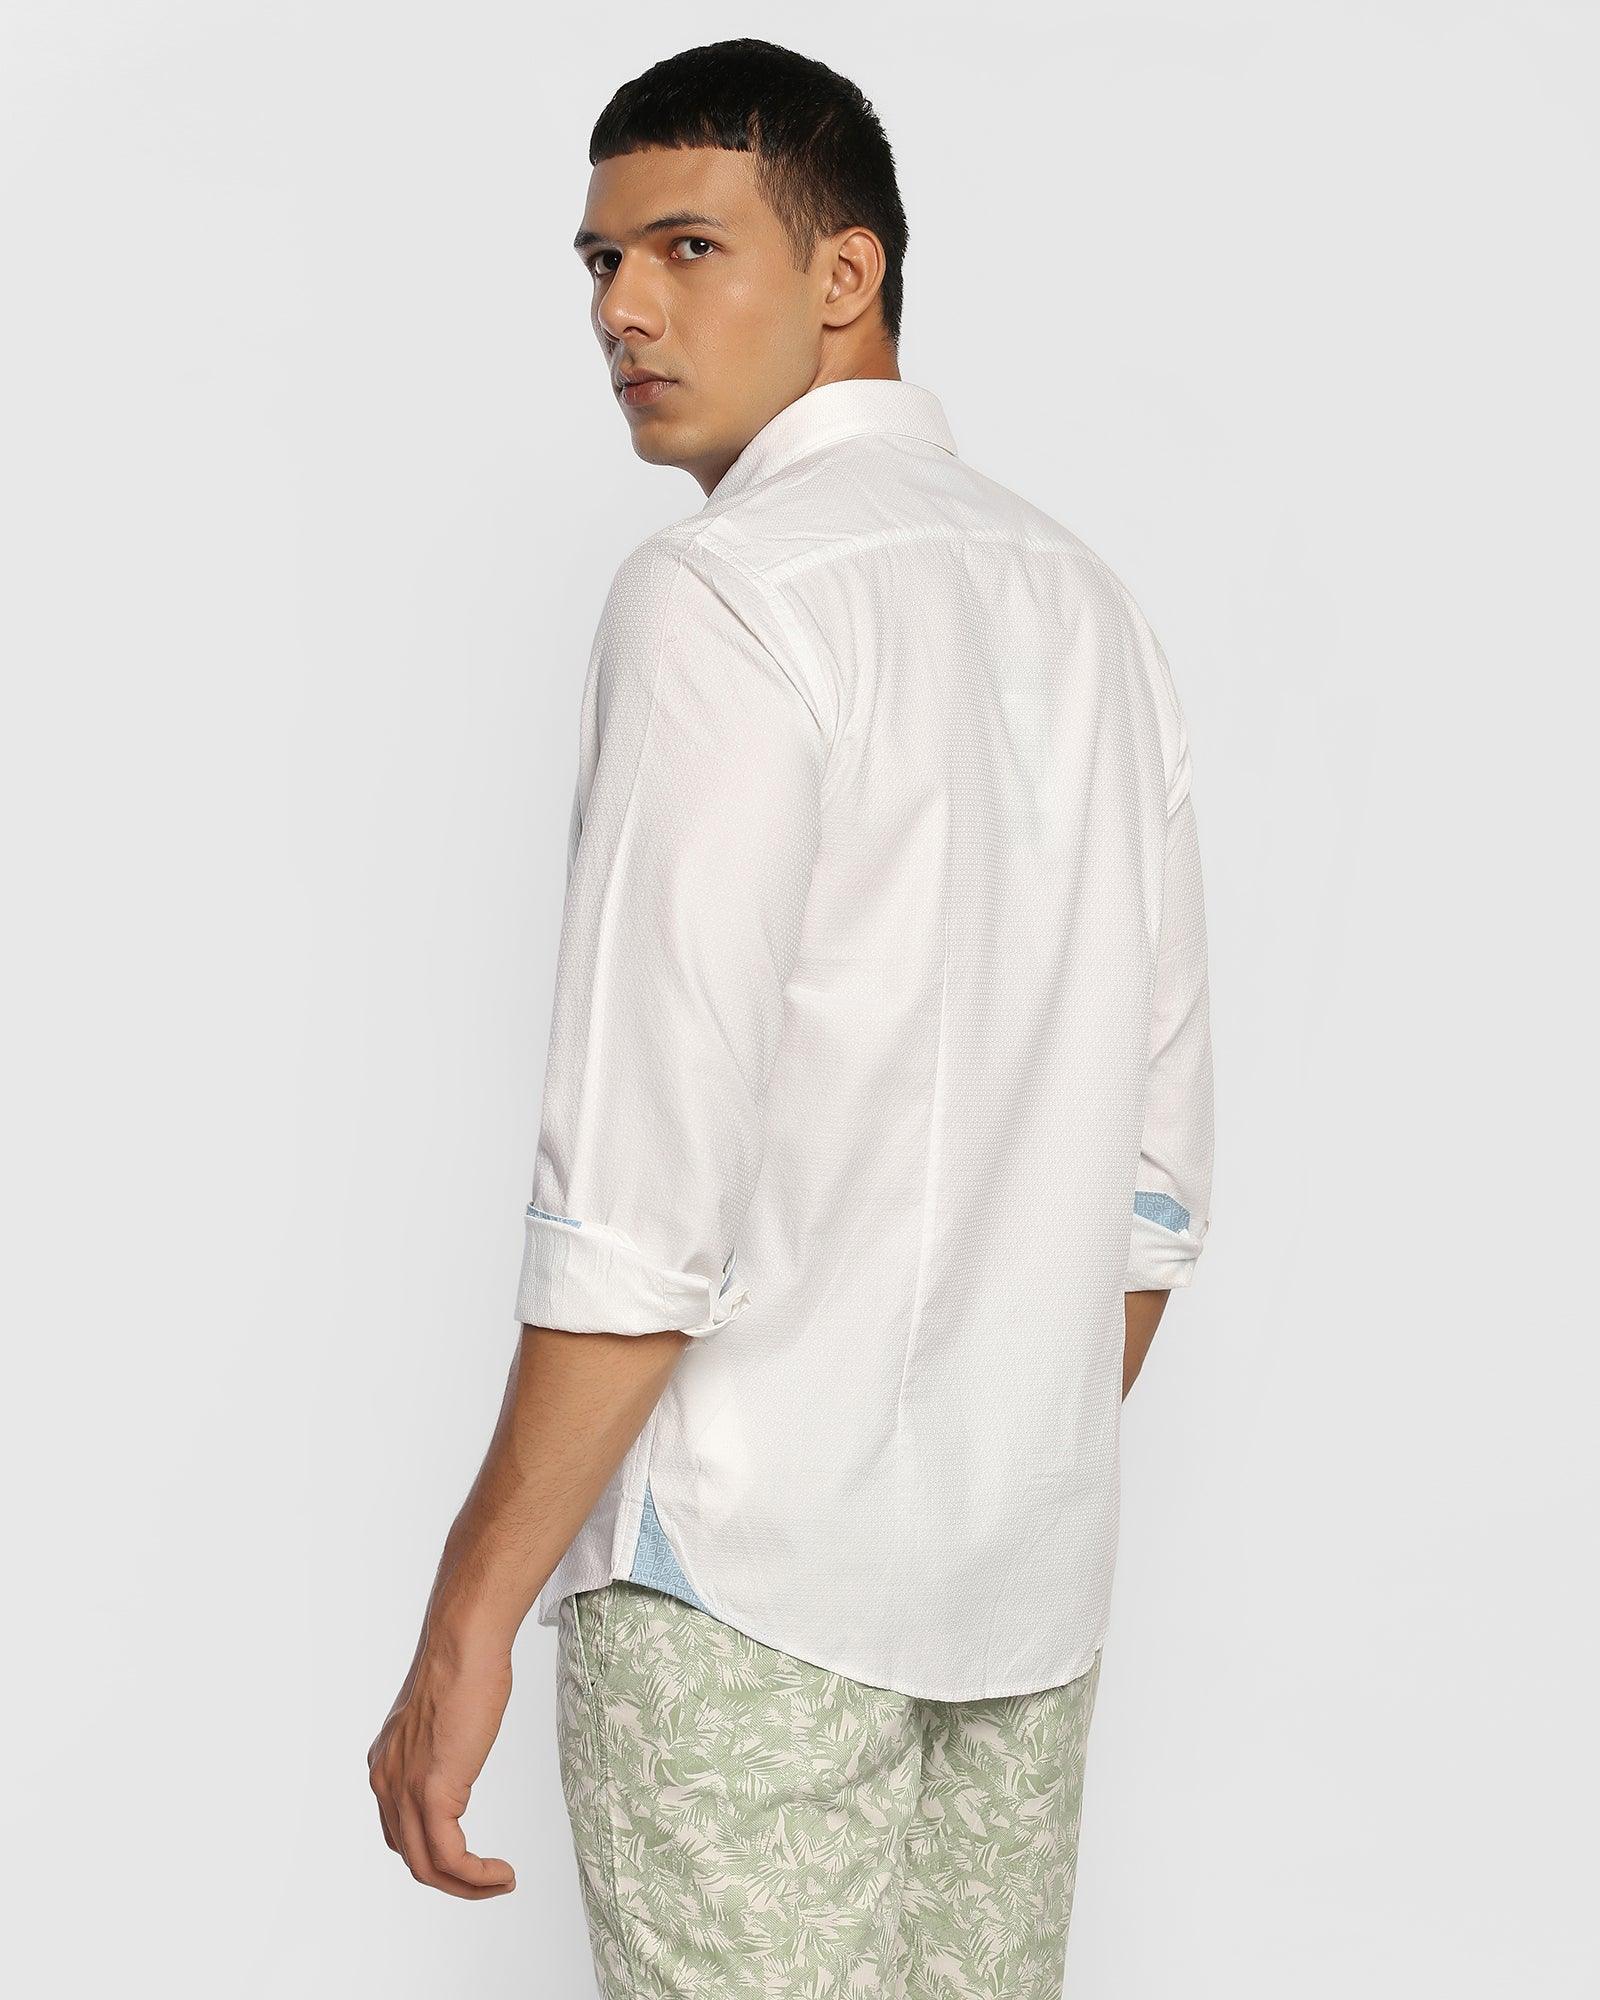 Casual White Textured Shirt - Jona